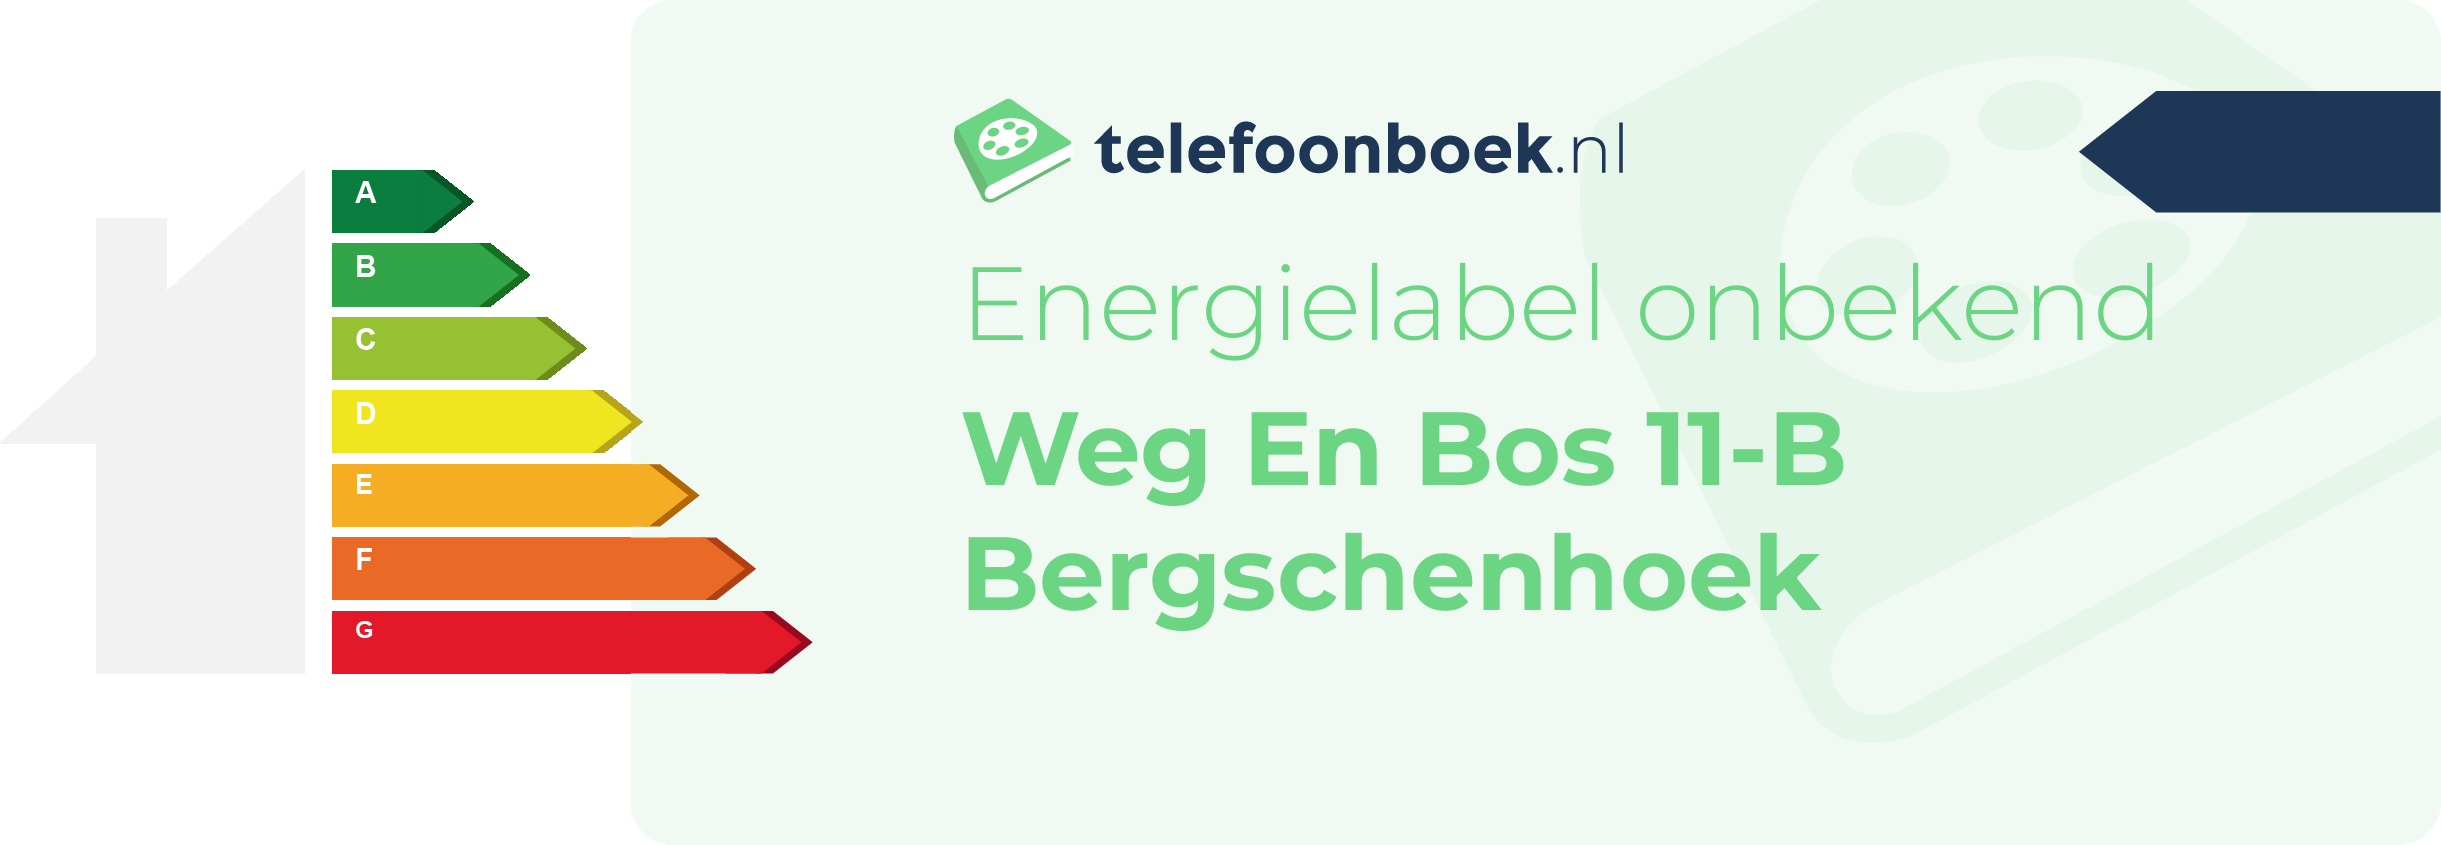 Energielabel Weg En Bos 11-B Bergschenhoek